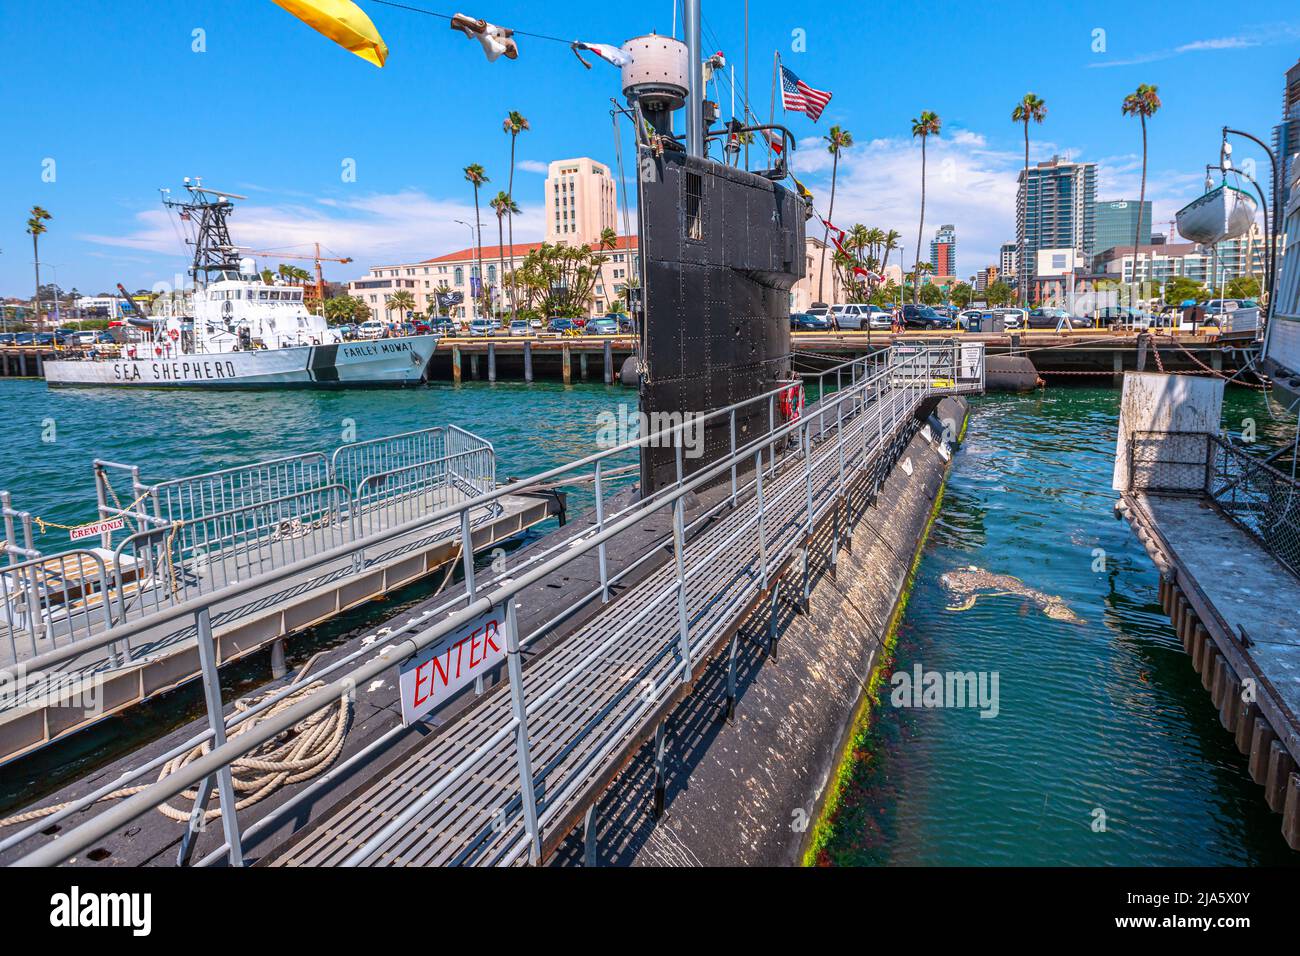 San Diego, Navy Pier, Californie, États-Unis - 1 août 2018 : USS Dolphin AGSS-555 sous-marin américain de la Marine des États-Unis au Musée maritime de San Diego Banque D'Images